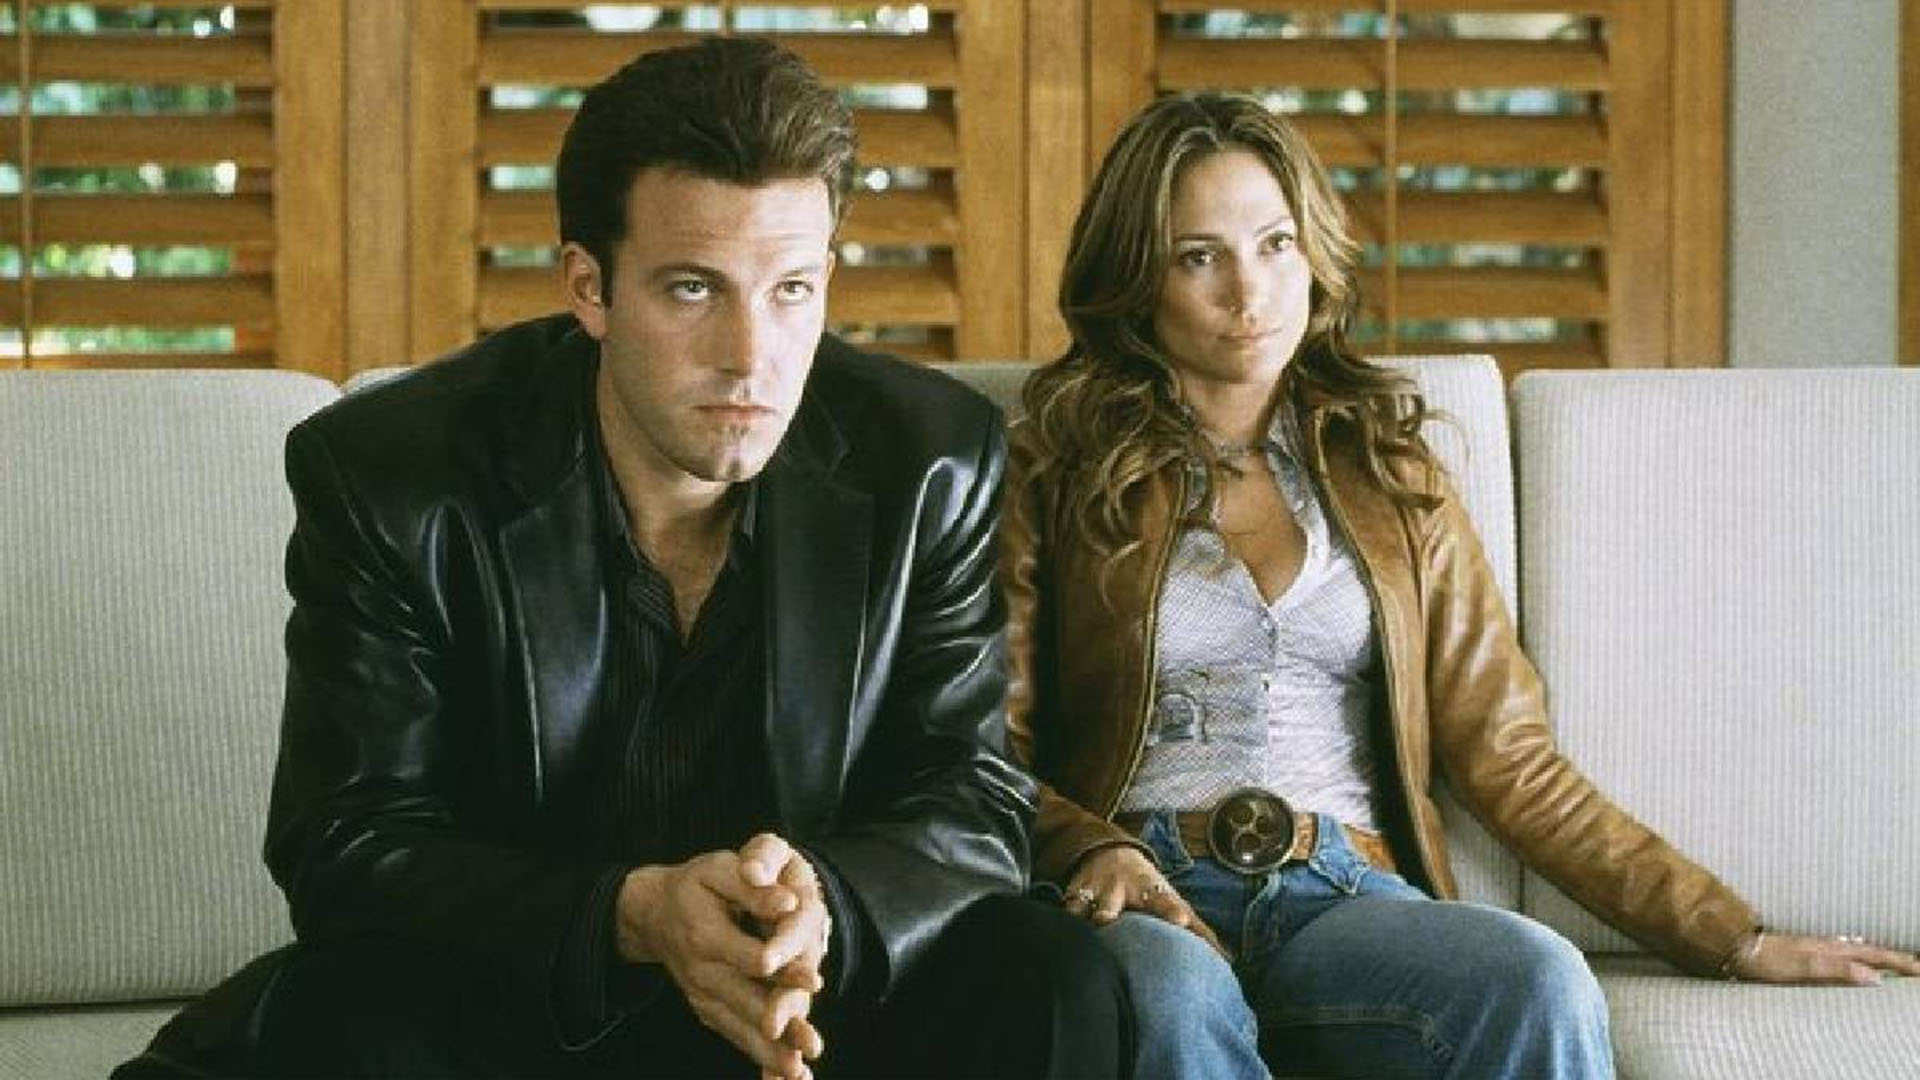 A finales de 2001, el set de grabación de la película Gigli, protagonizada por Jennifer Lopez y Ben Affleck se encendió la llama entre ambos artistas